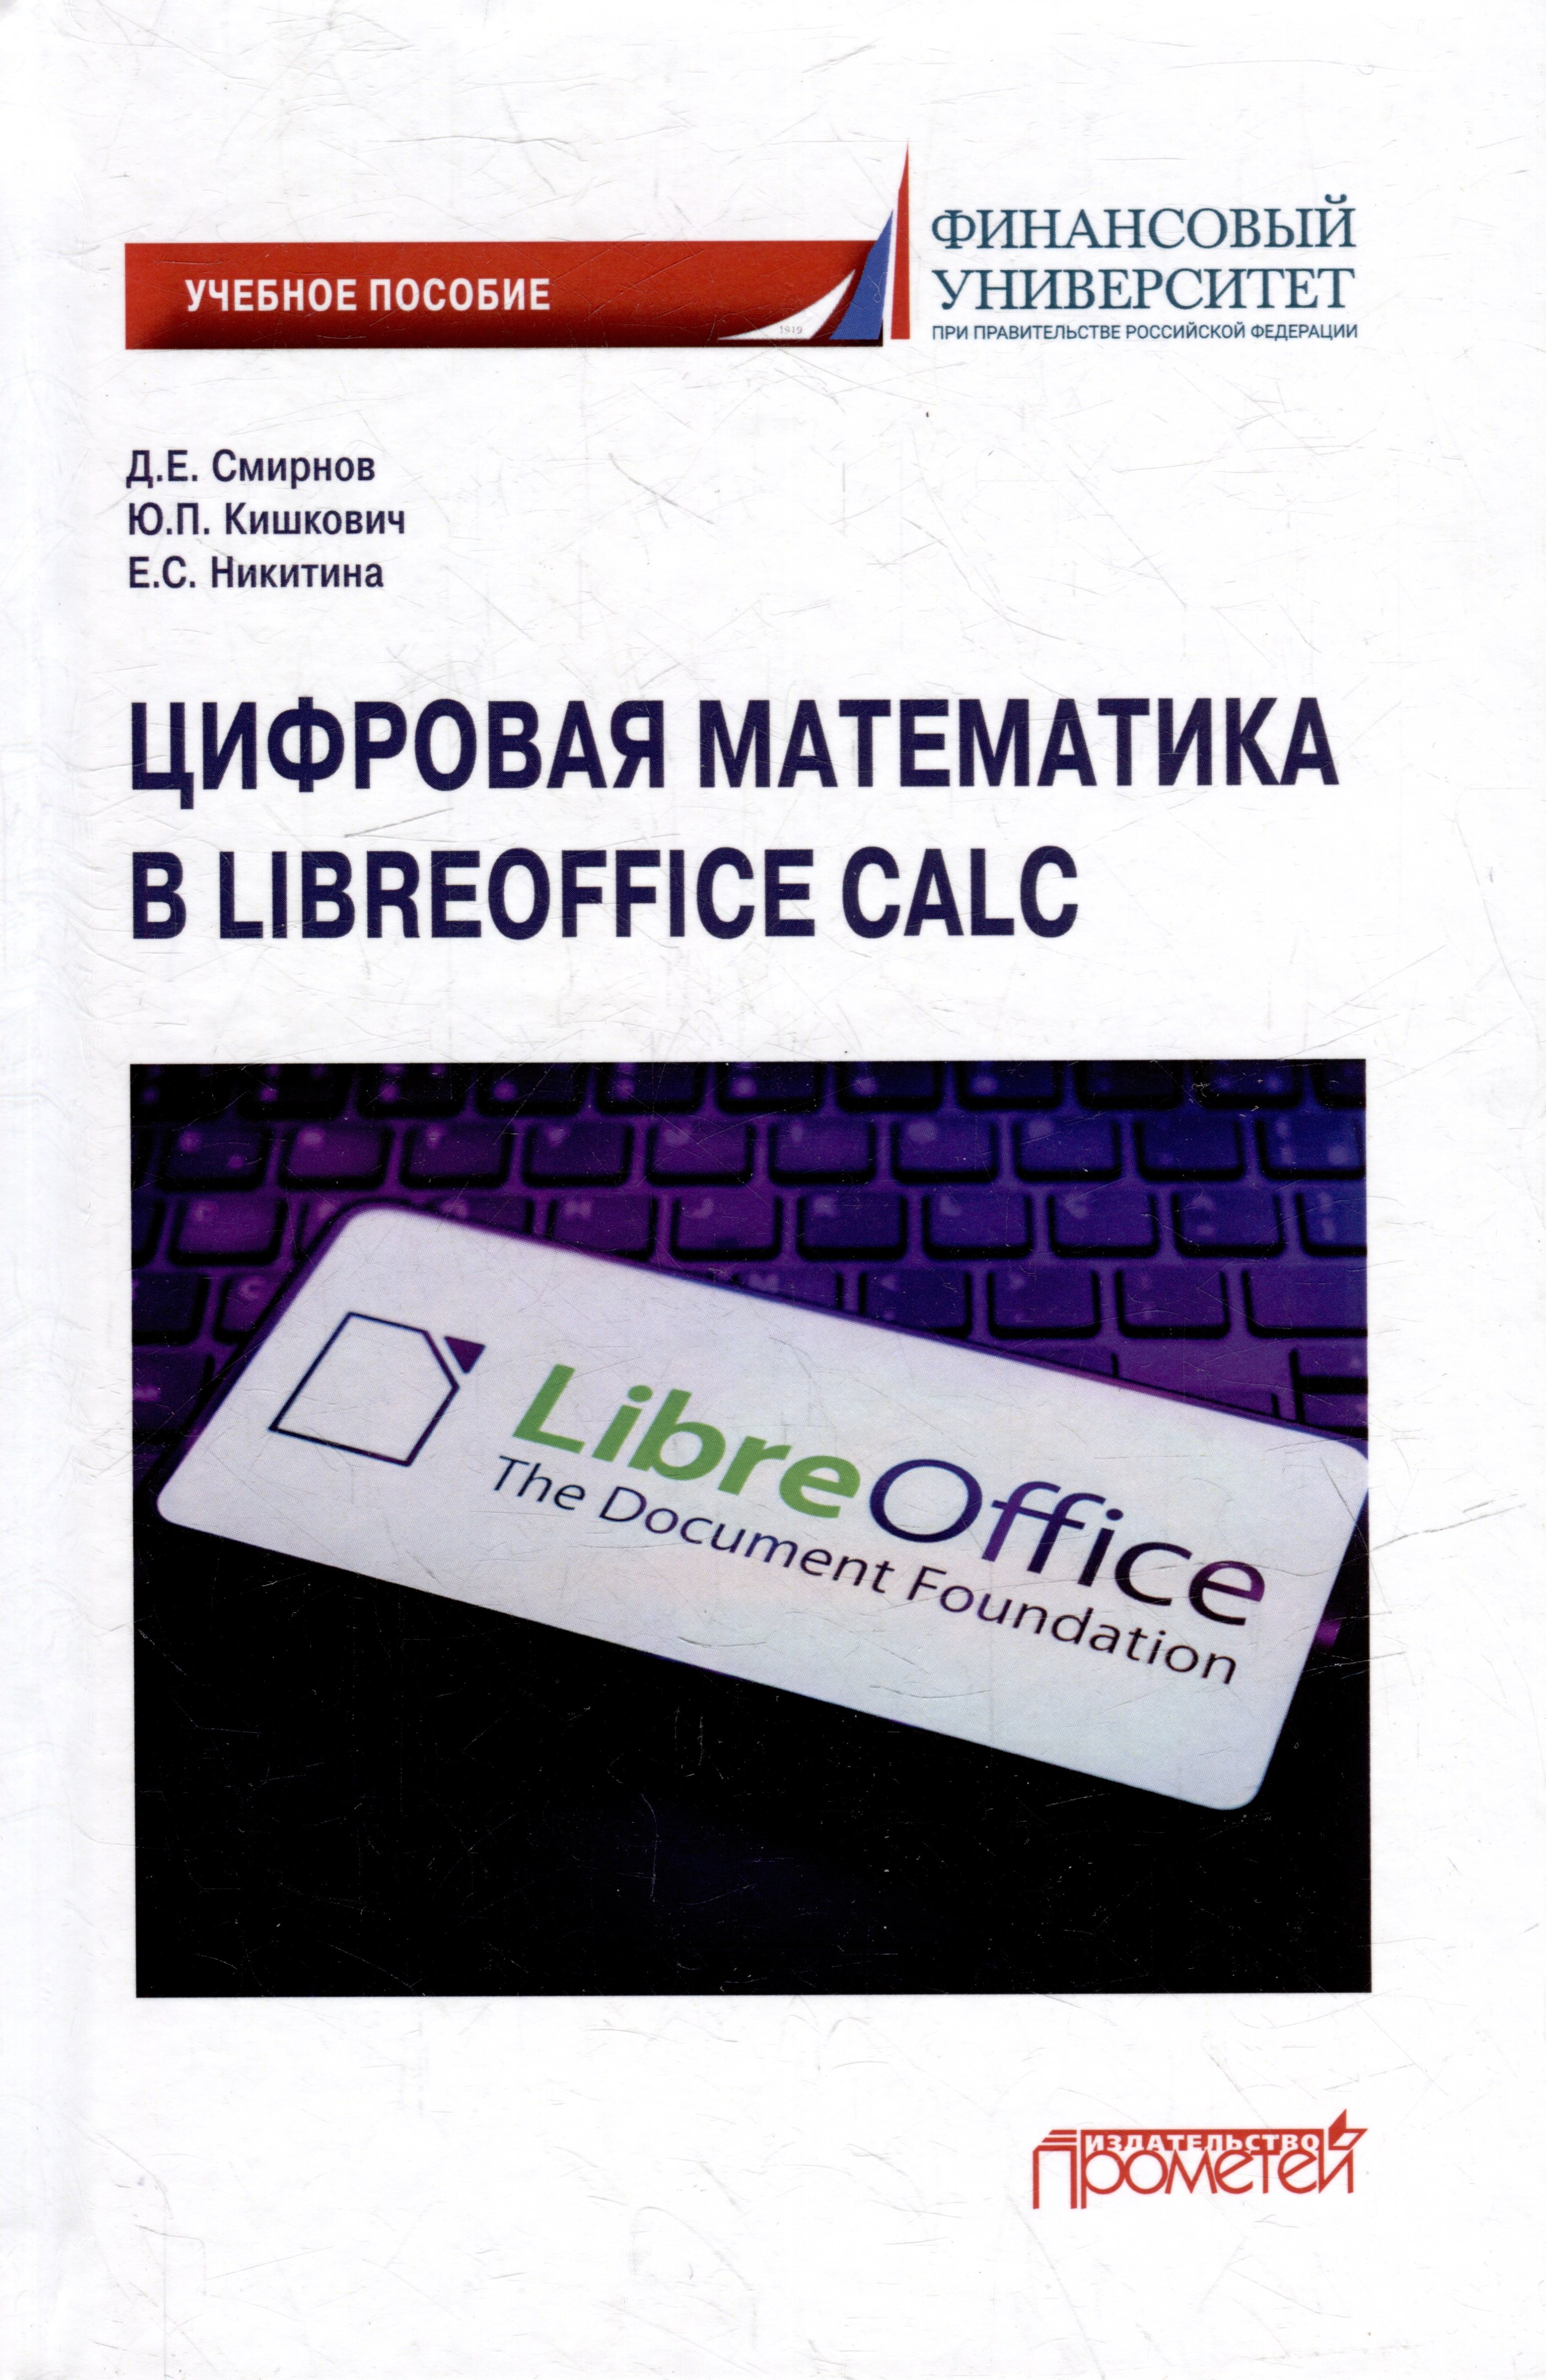    LibreOffice Calc:  